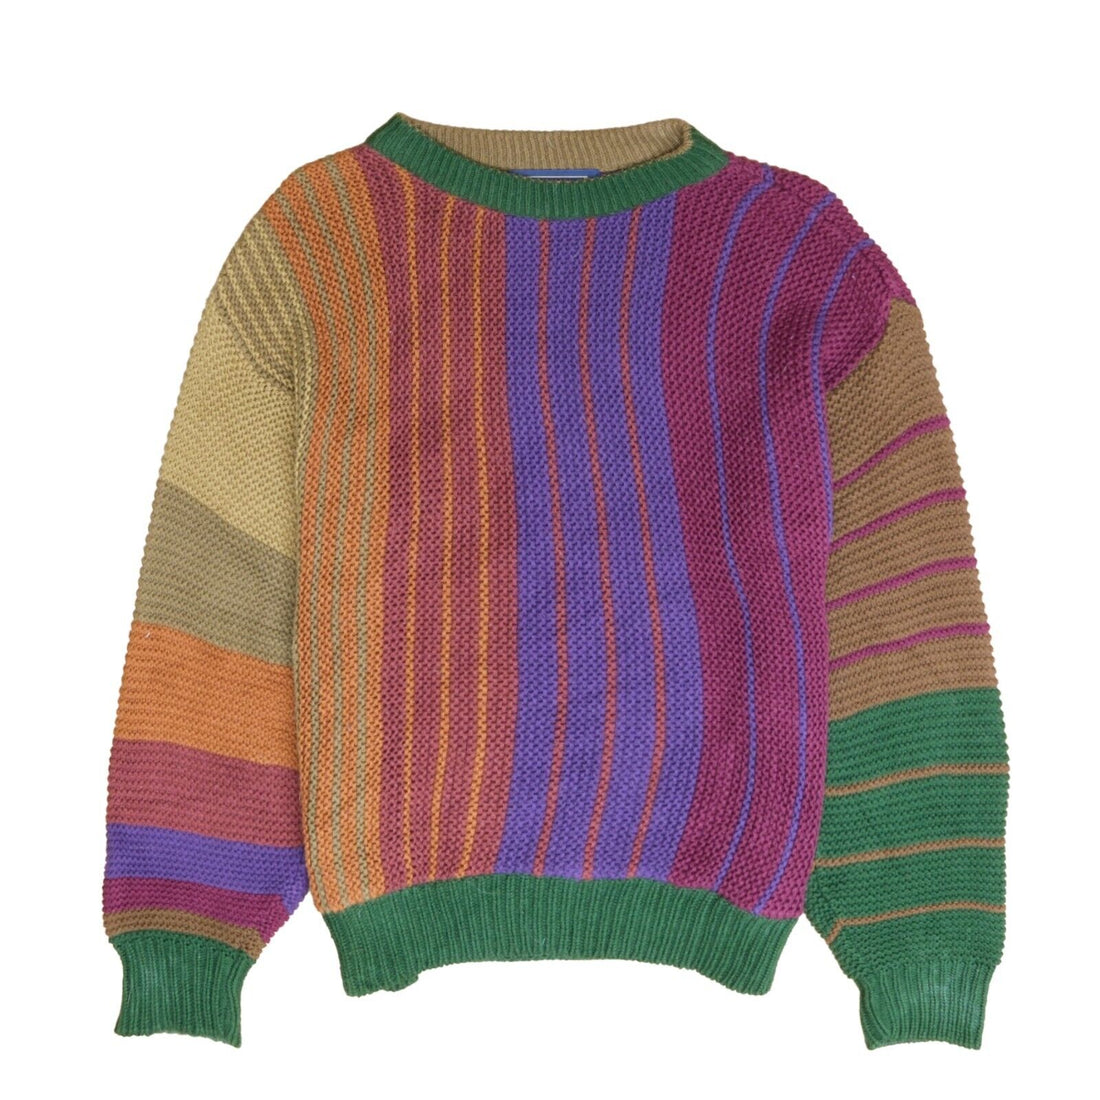 Vintage Chaps Polo Ralph Lauren Knit Sweater Size Large Multicolor 90s